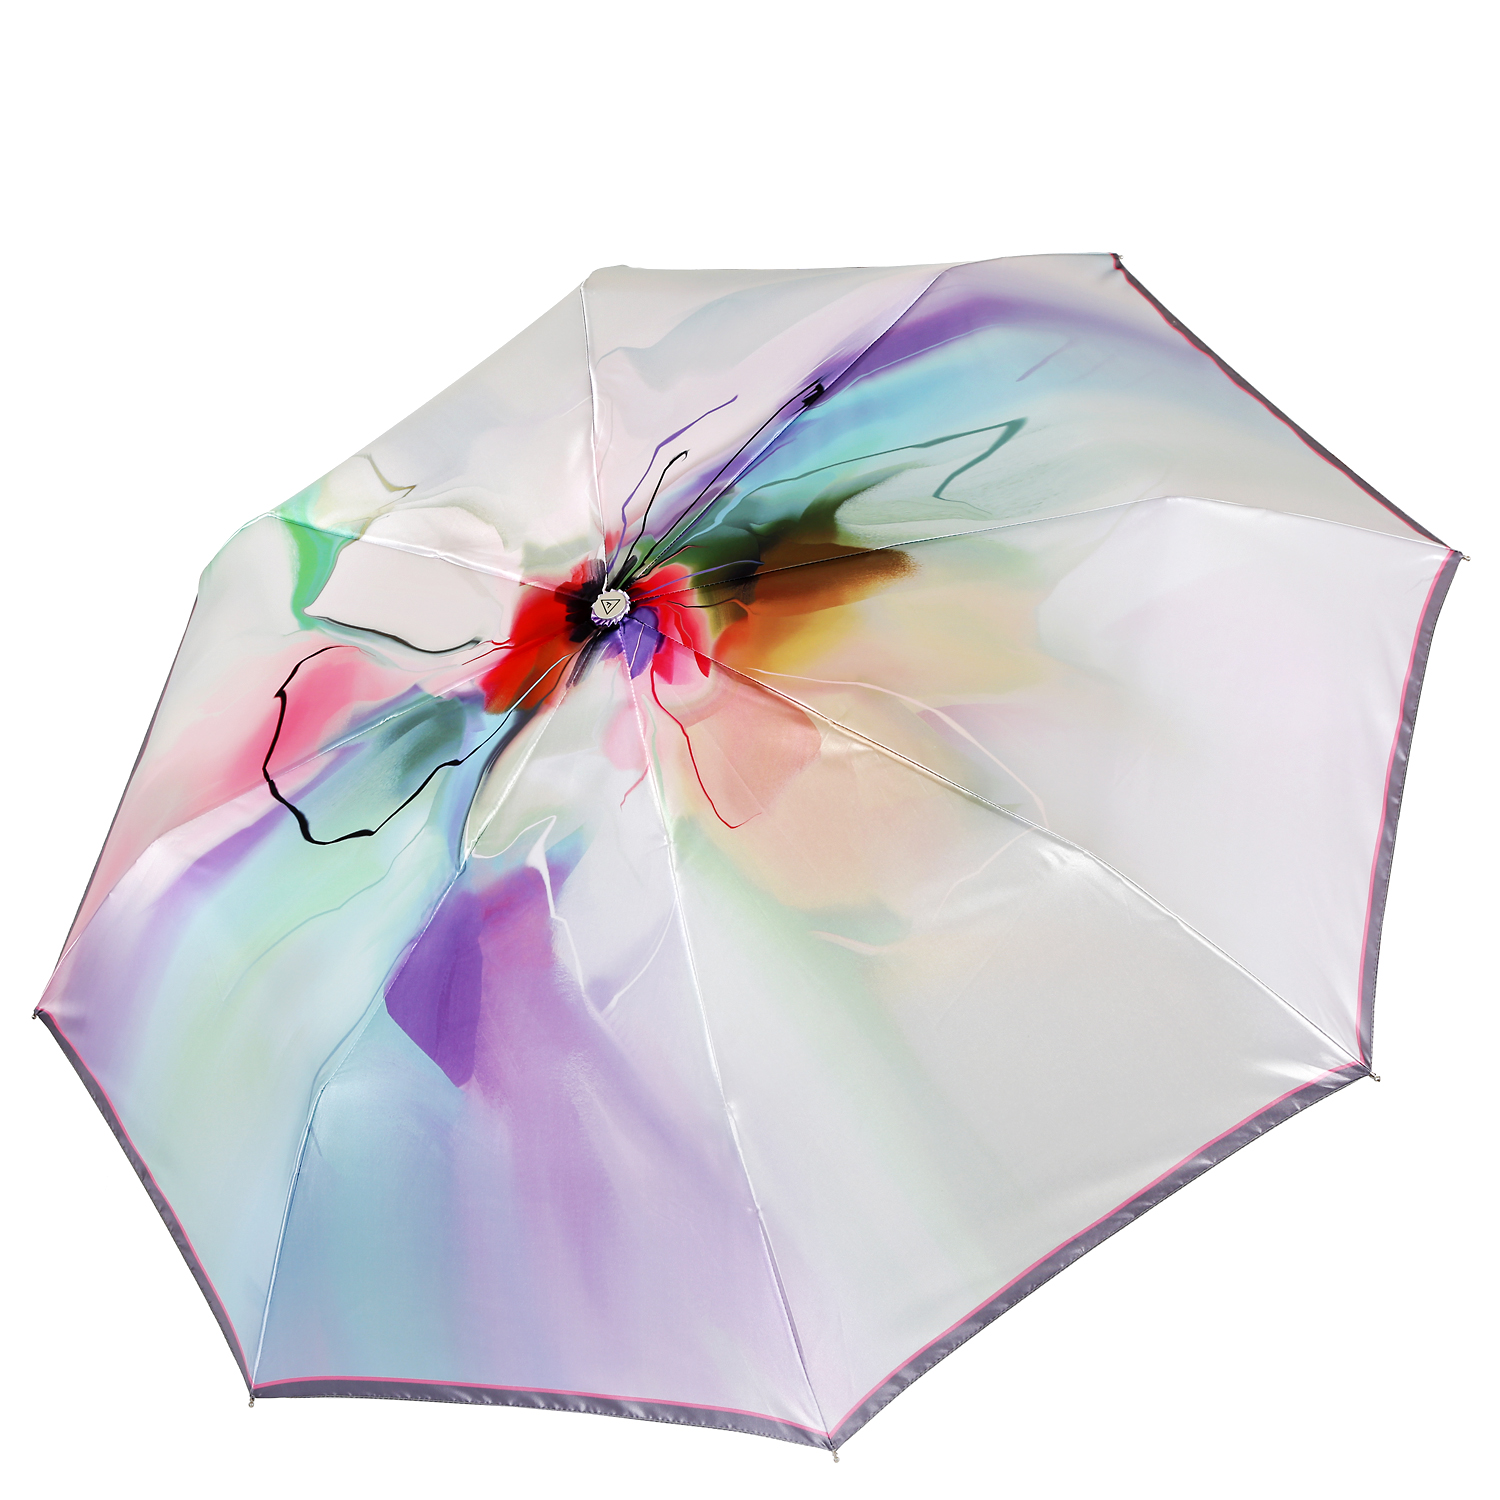 Зонты фабретти